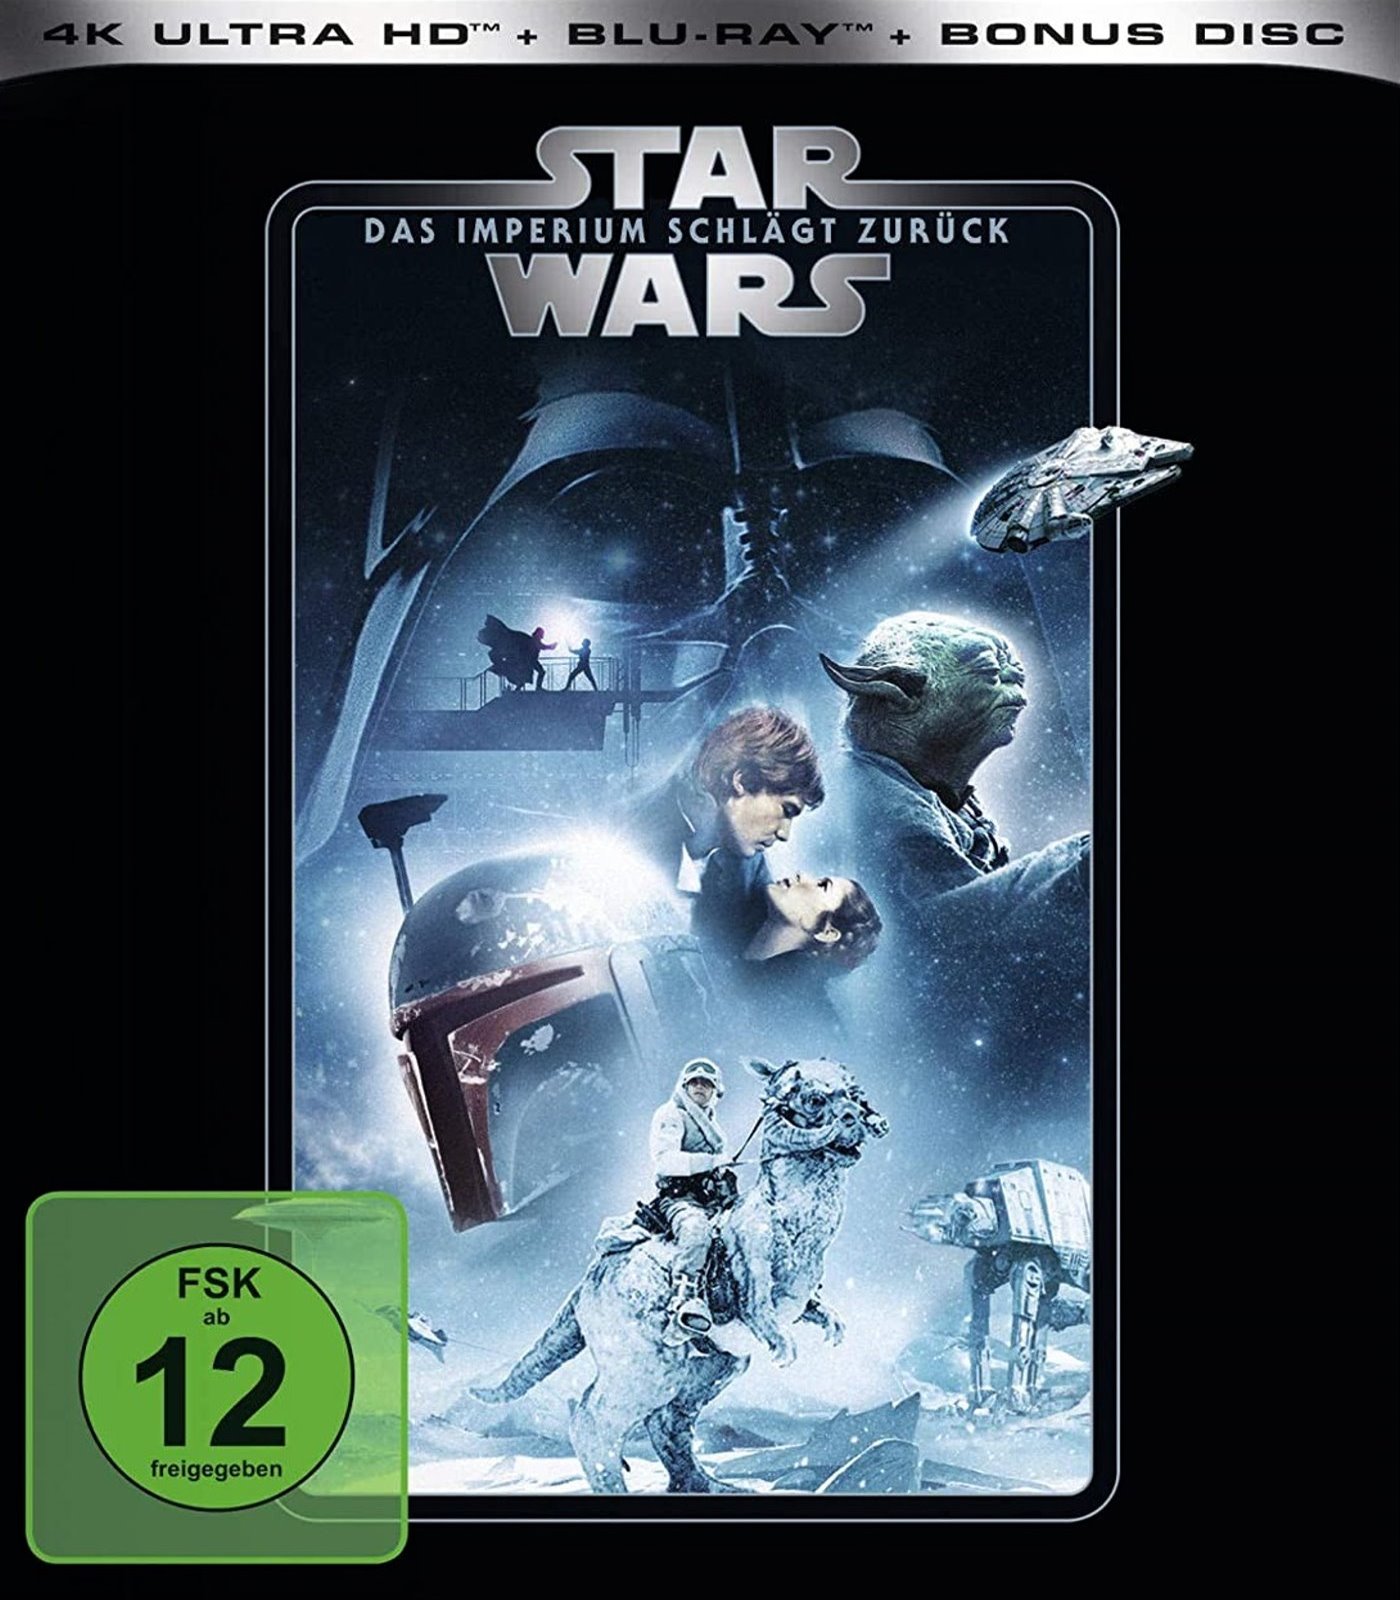 Cover - Star Wars - Das Imperium schlägt zurück.jpg